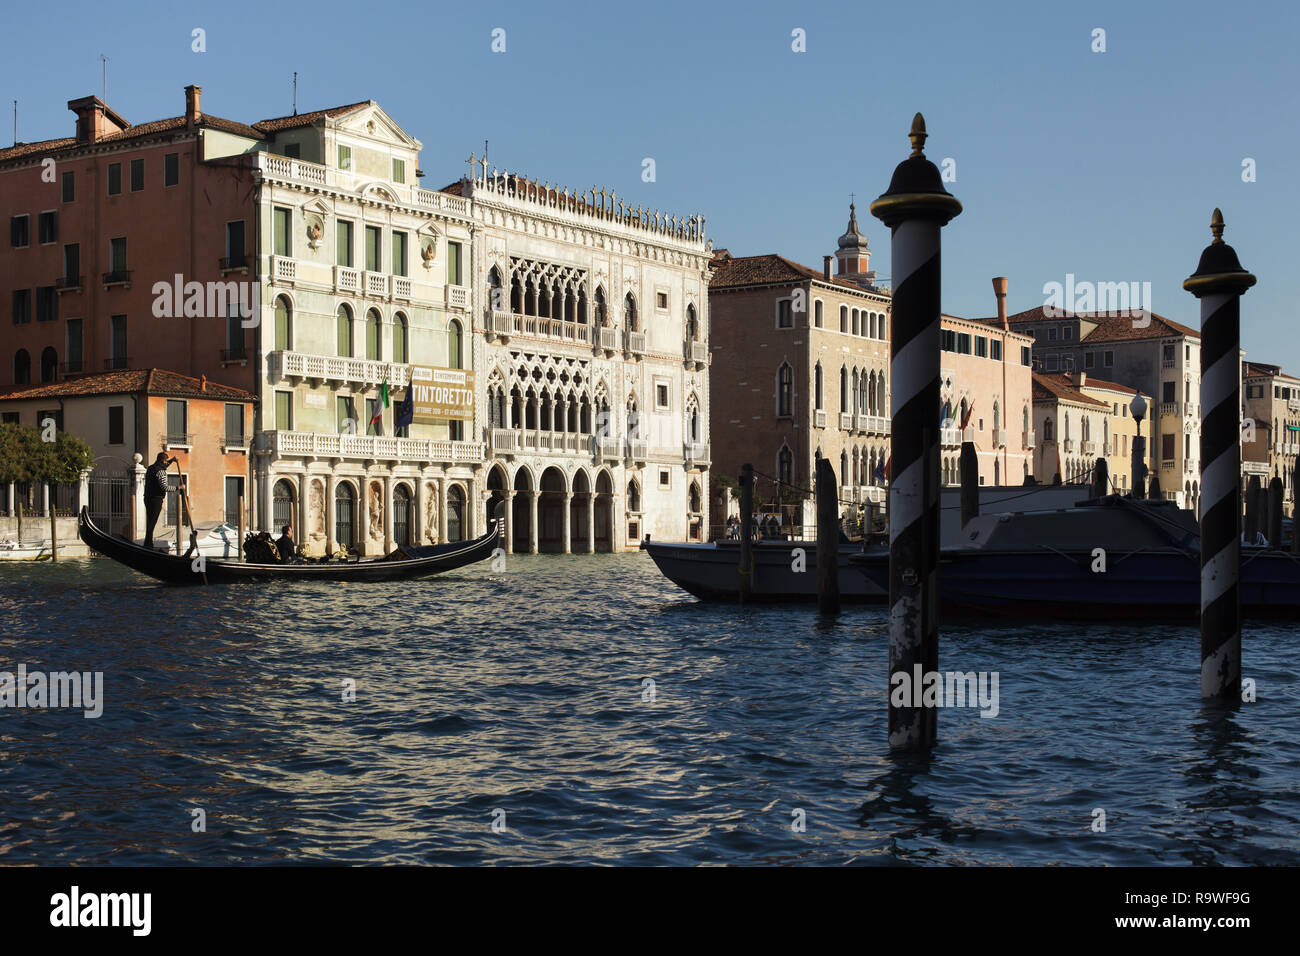 Ca' d'Oro (Palazzo Santa Sofia) am Grand Canal (Canal Grande) in Venedig, Italien. Der Palast ist das Gehäuse jetzt der Galleria Giorgio Franchetti. Palazzo Giusti ist auf der linken Seite gesehen. Stockfoto